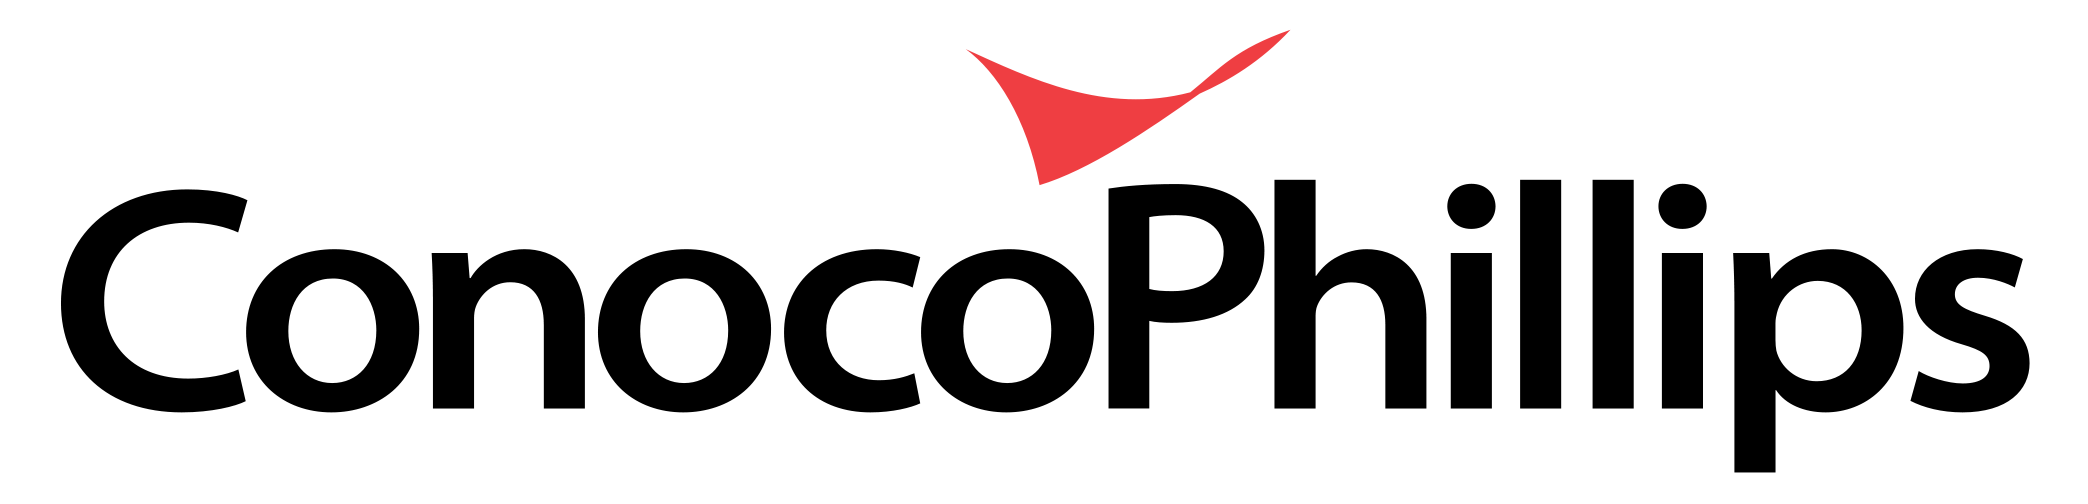 Logotipo de ConocoPhillips